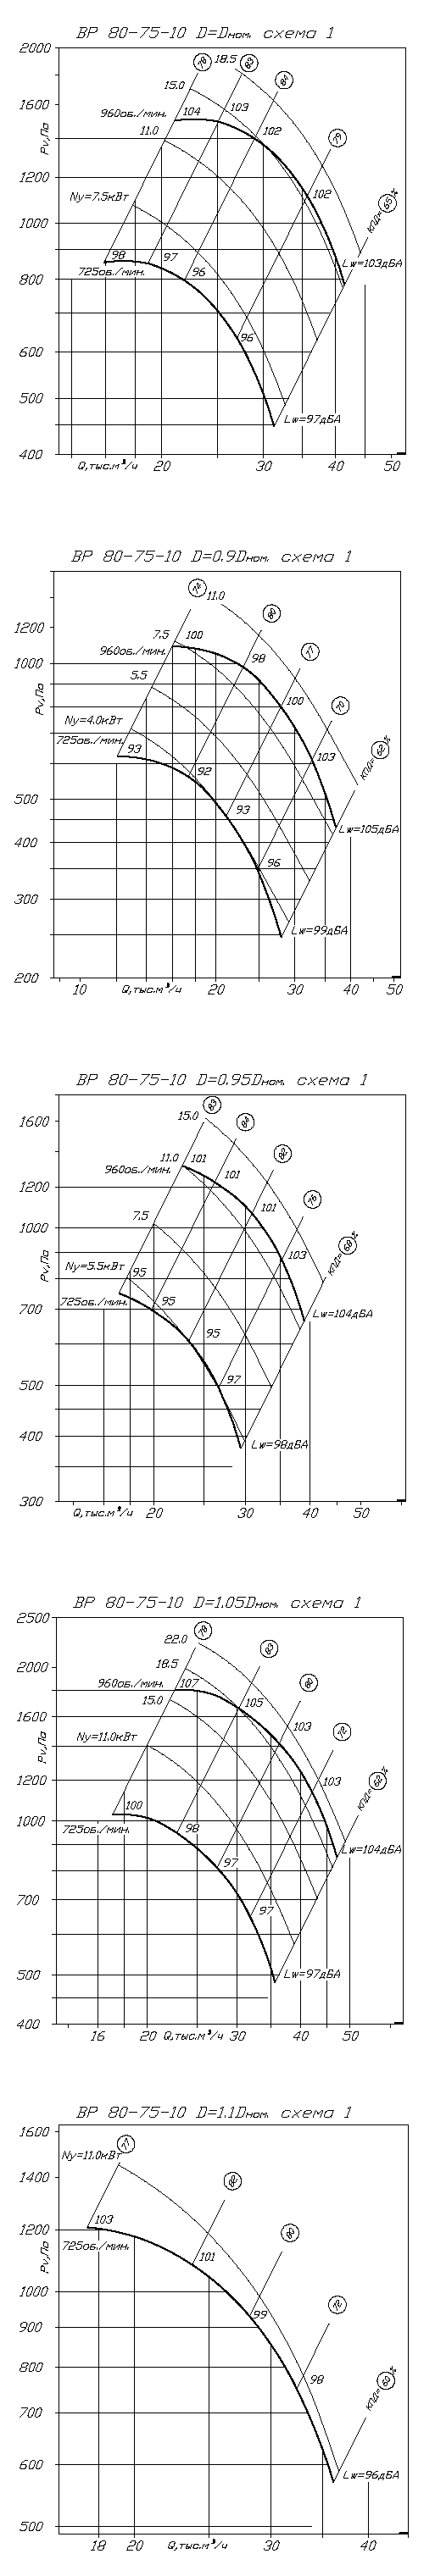 Аэродинамические характеристики вентилятора ВР 80-75 №10